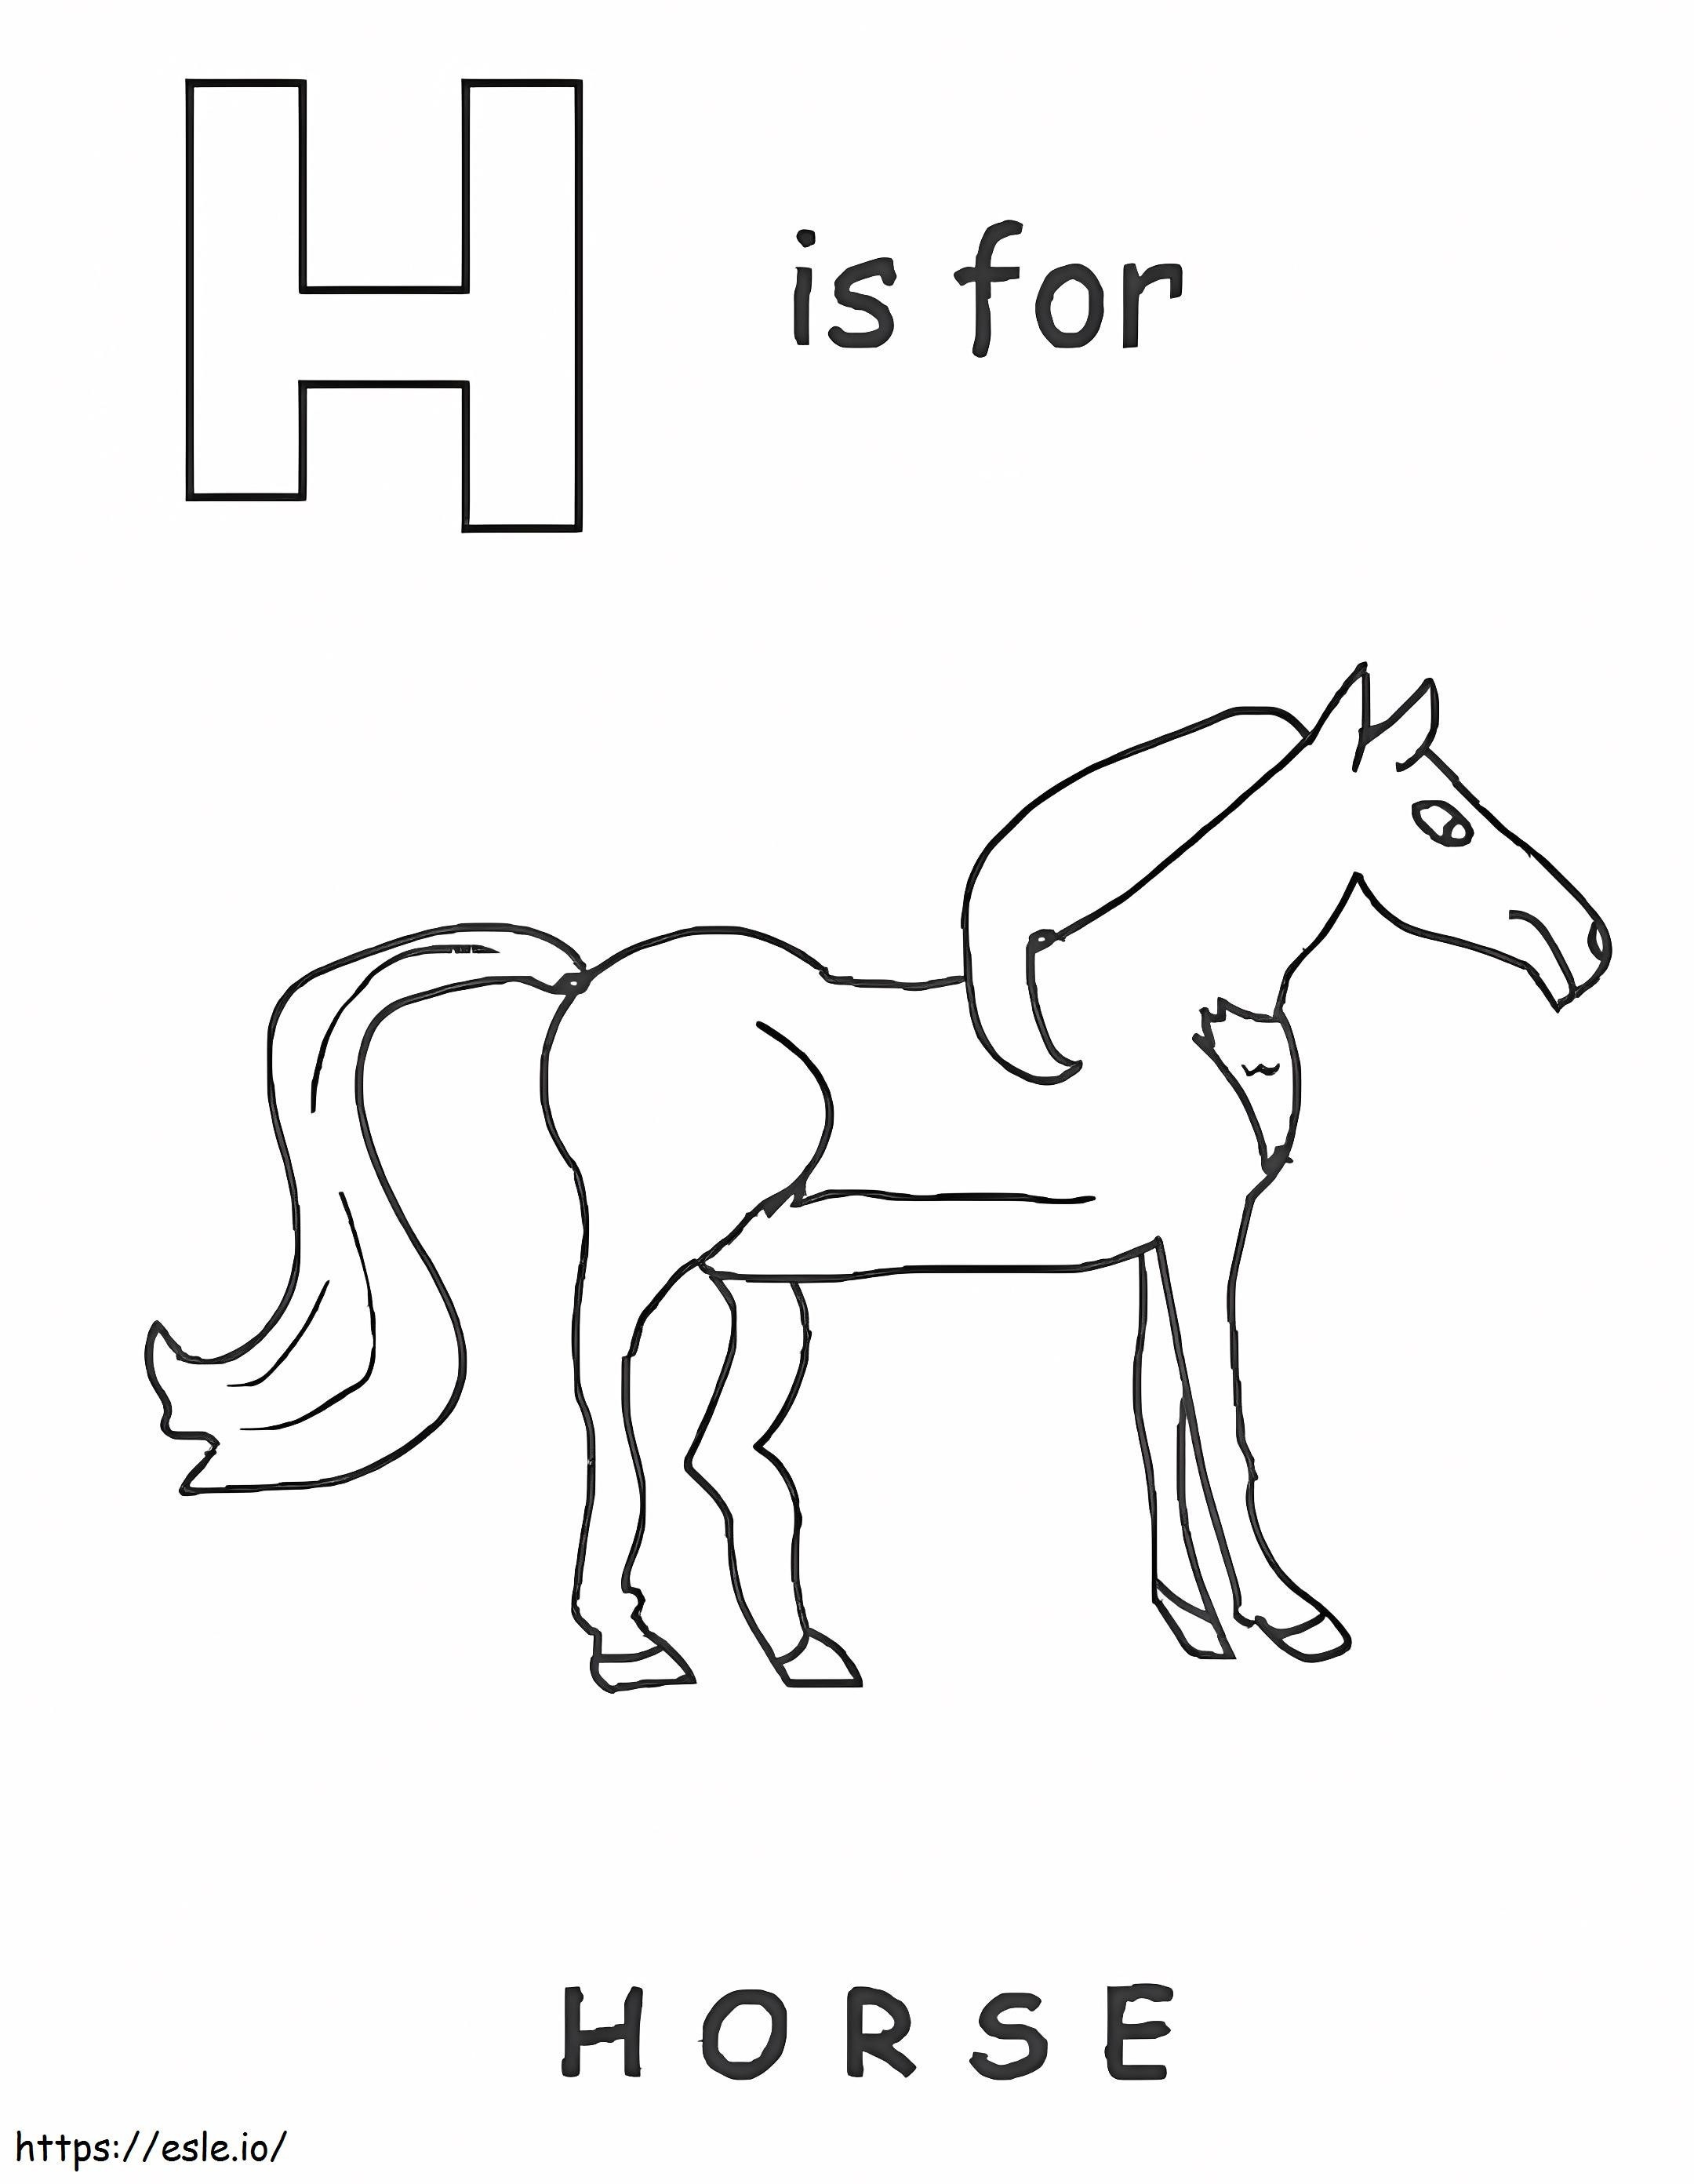 H sta per cavallo da colorare